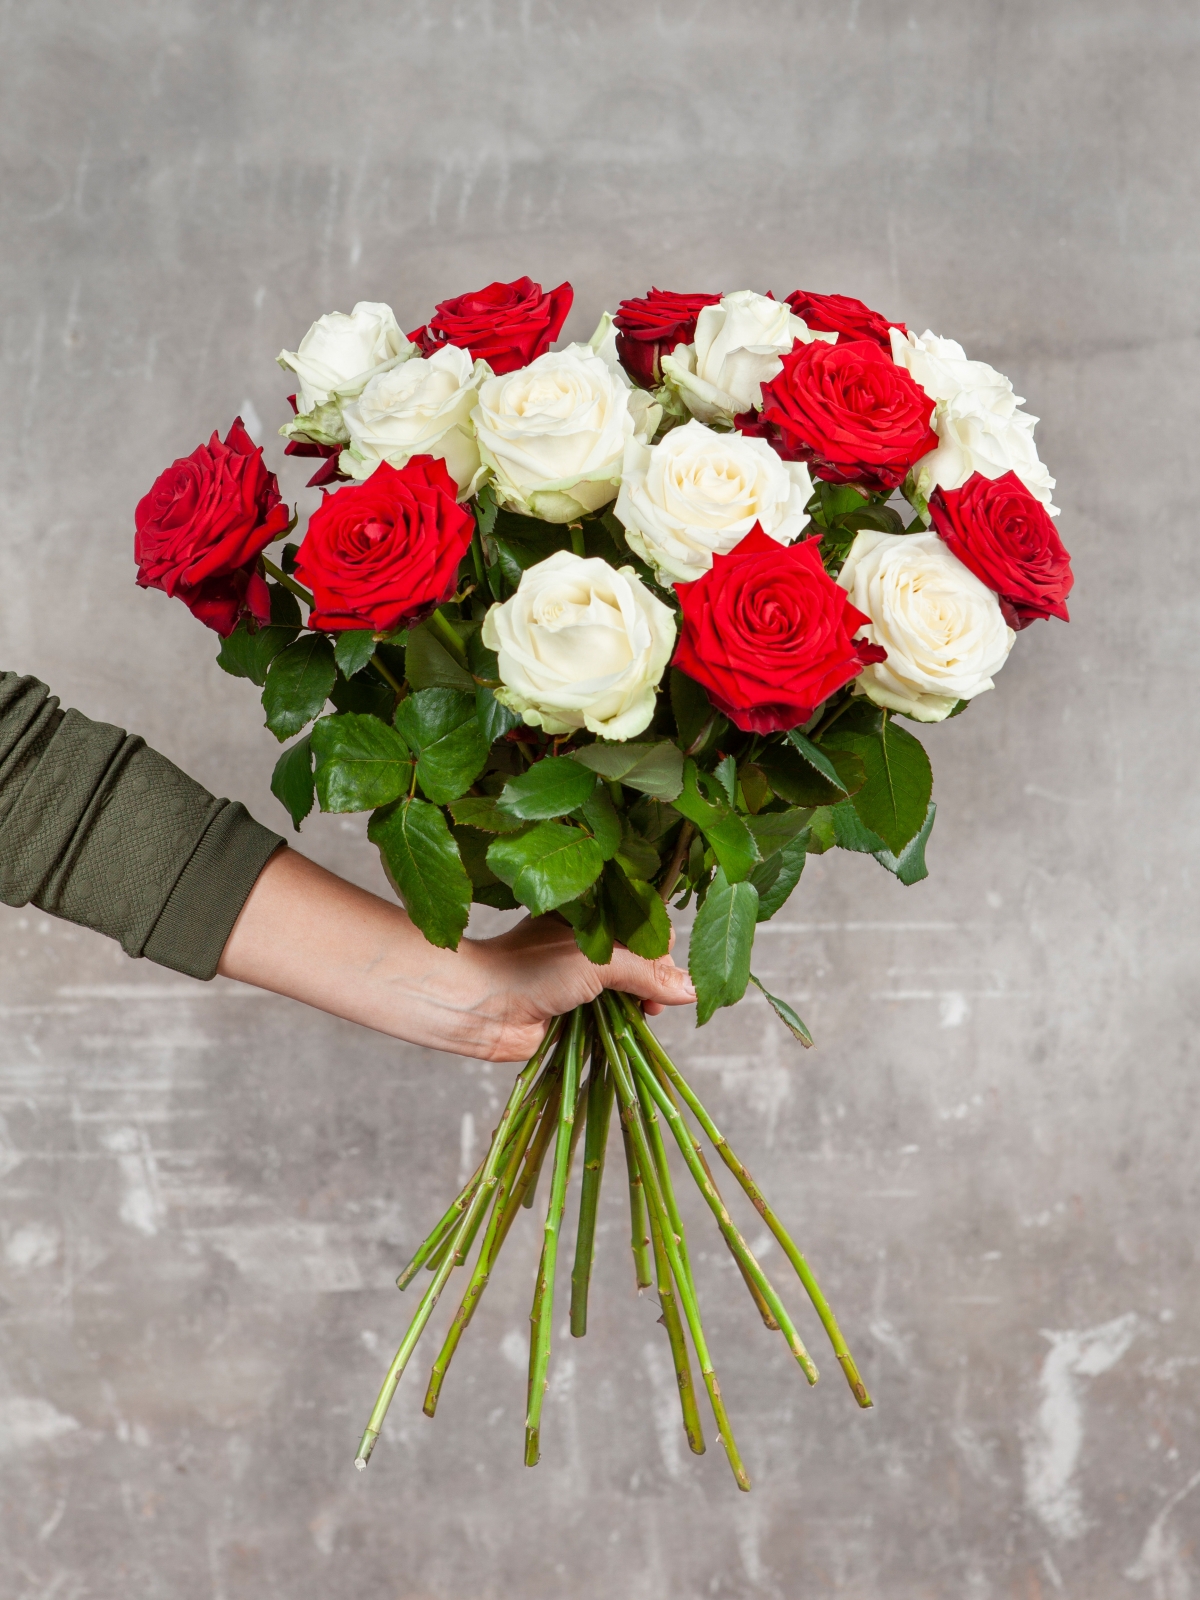 Afscheid Handvol Socialistisch BloemenVaria Boeket rode rozen Online boeket bloemen bloemstuk bestellen en  landelijk bezorgen